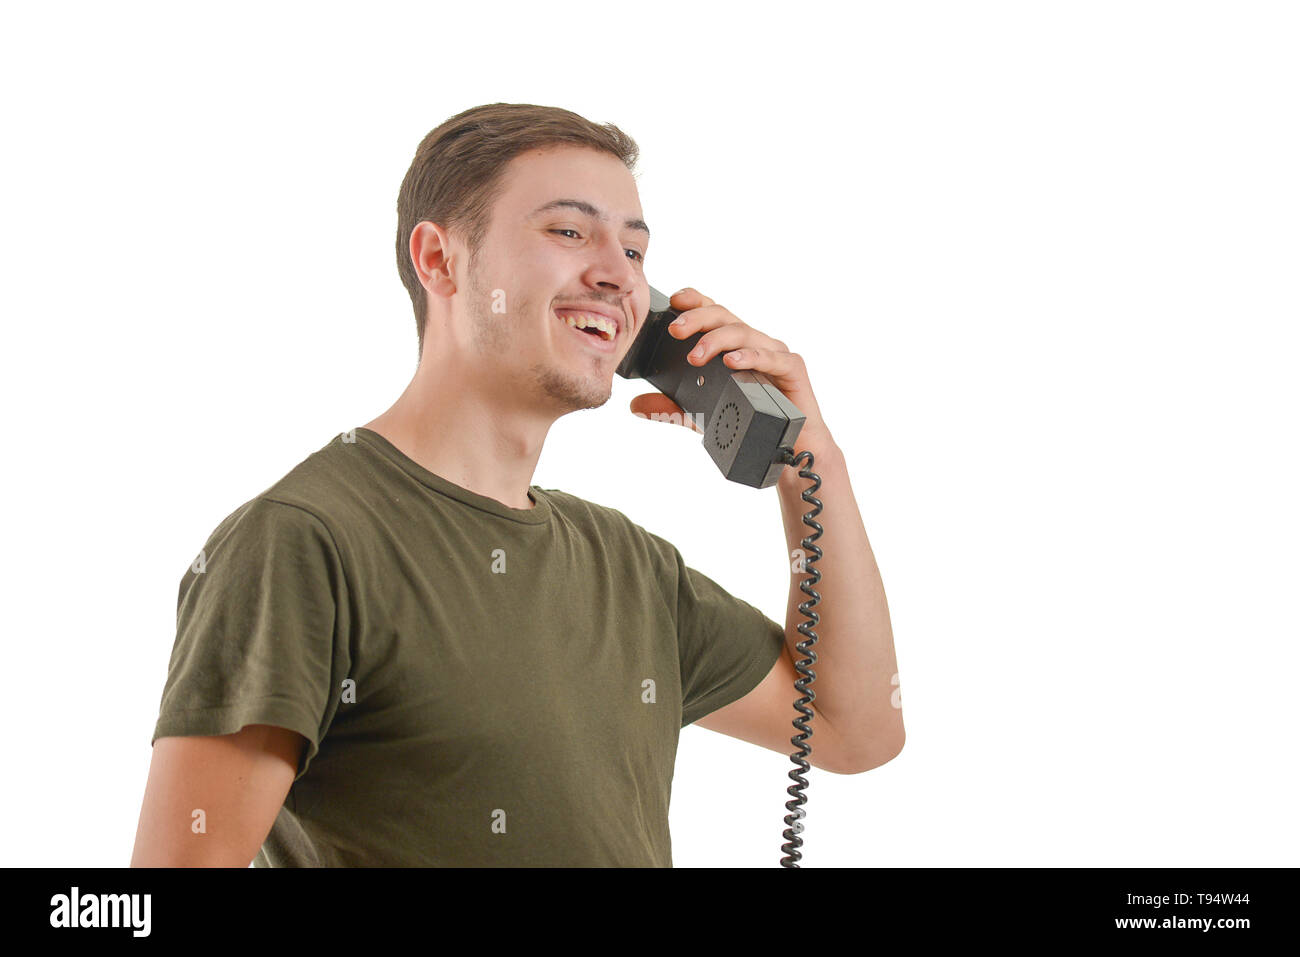 Photo d'un homme qui parle à un ancien téléphone, isolé sur fond blanc Banque D'Images